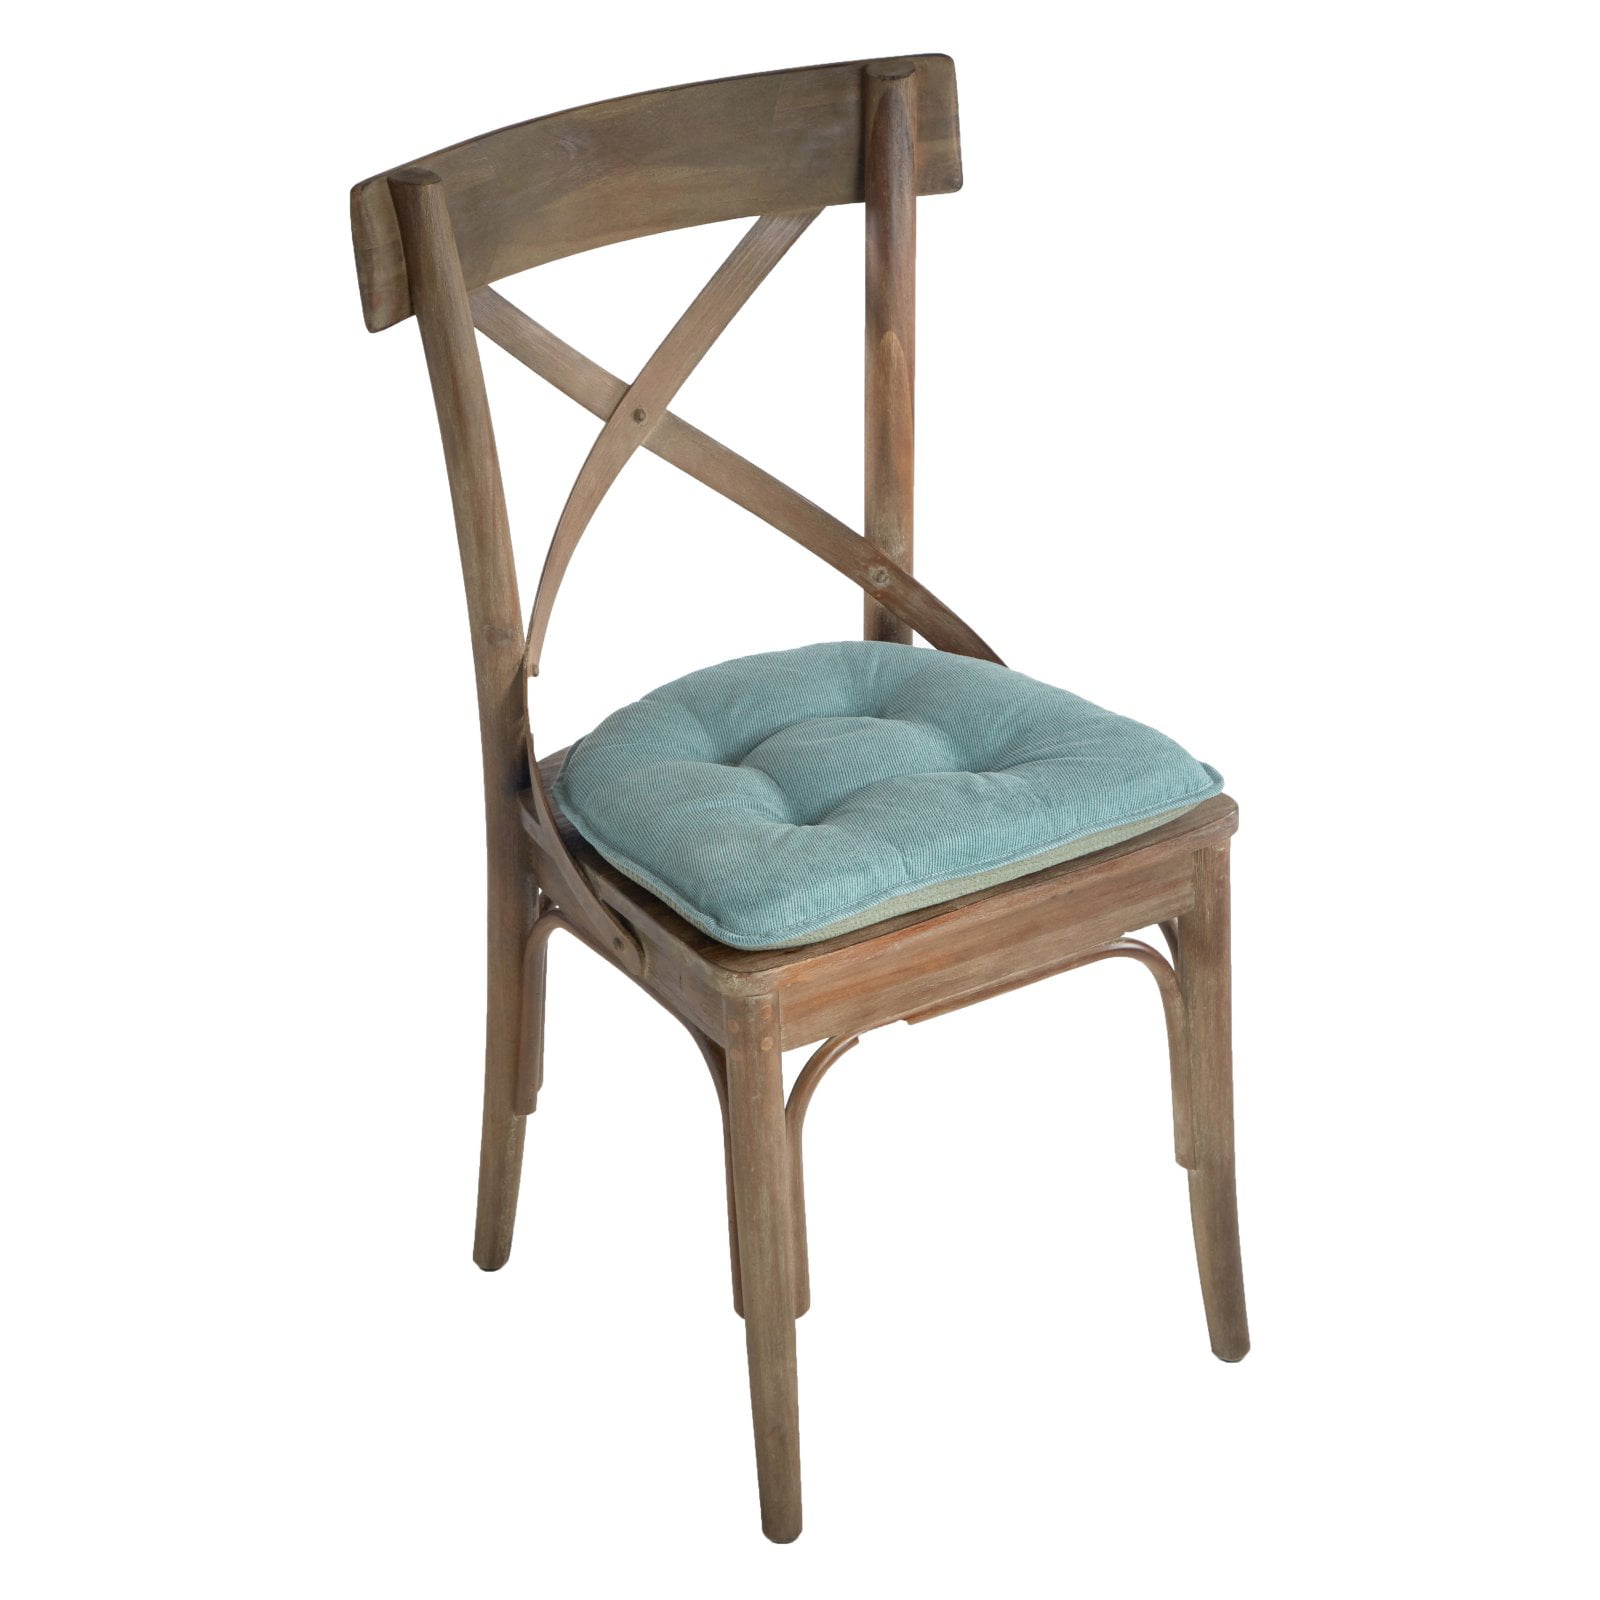 19-inch U-Shaped Twill Tufted Dining Chair Cushion 93184-1CH-TW-BB